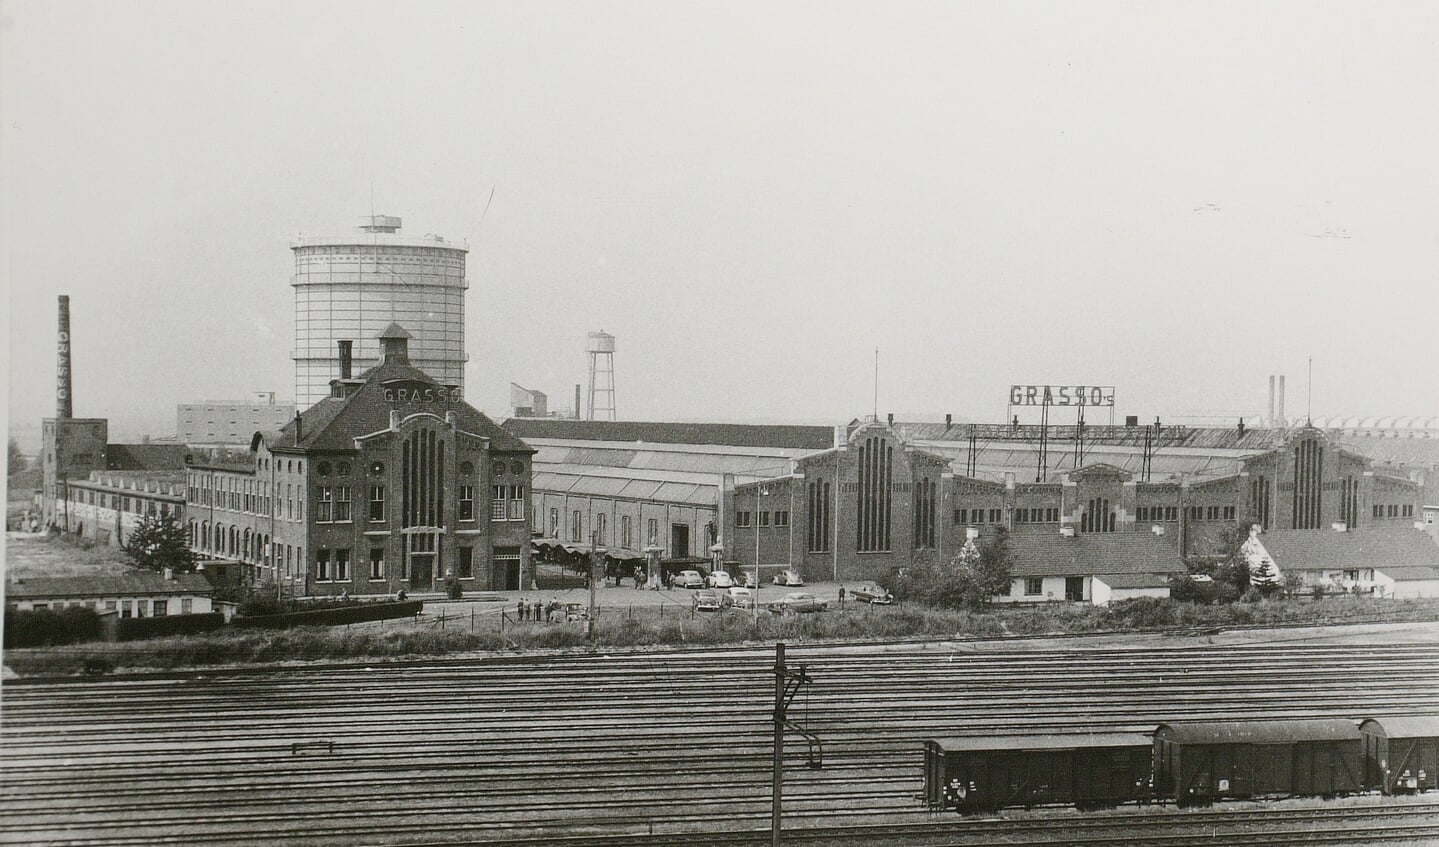 De Grasso machinefabrieken en gashouder gezien vanaf station Den Bosch op 17 augustus 1955. (Foto: Fotopersbureau Het Zuiden)